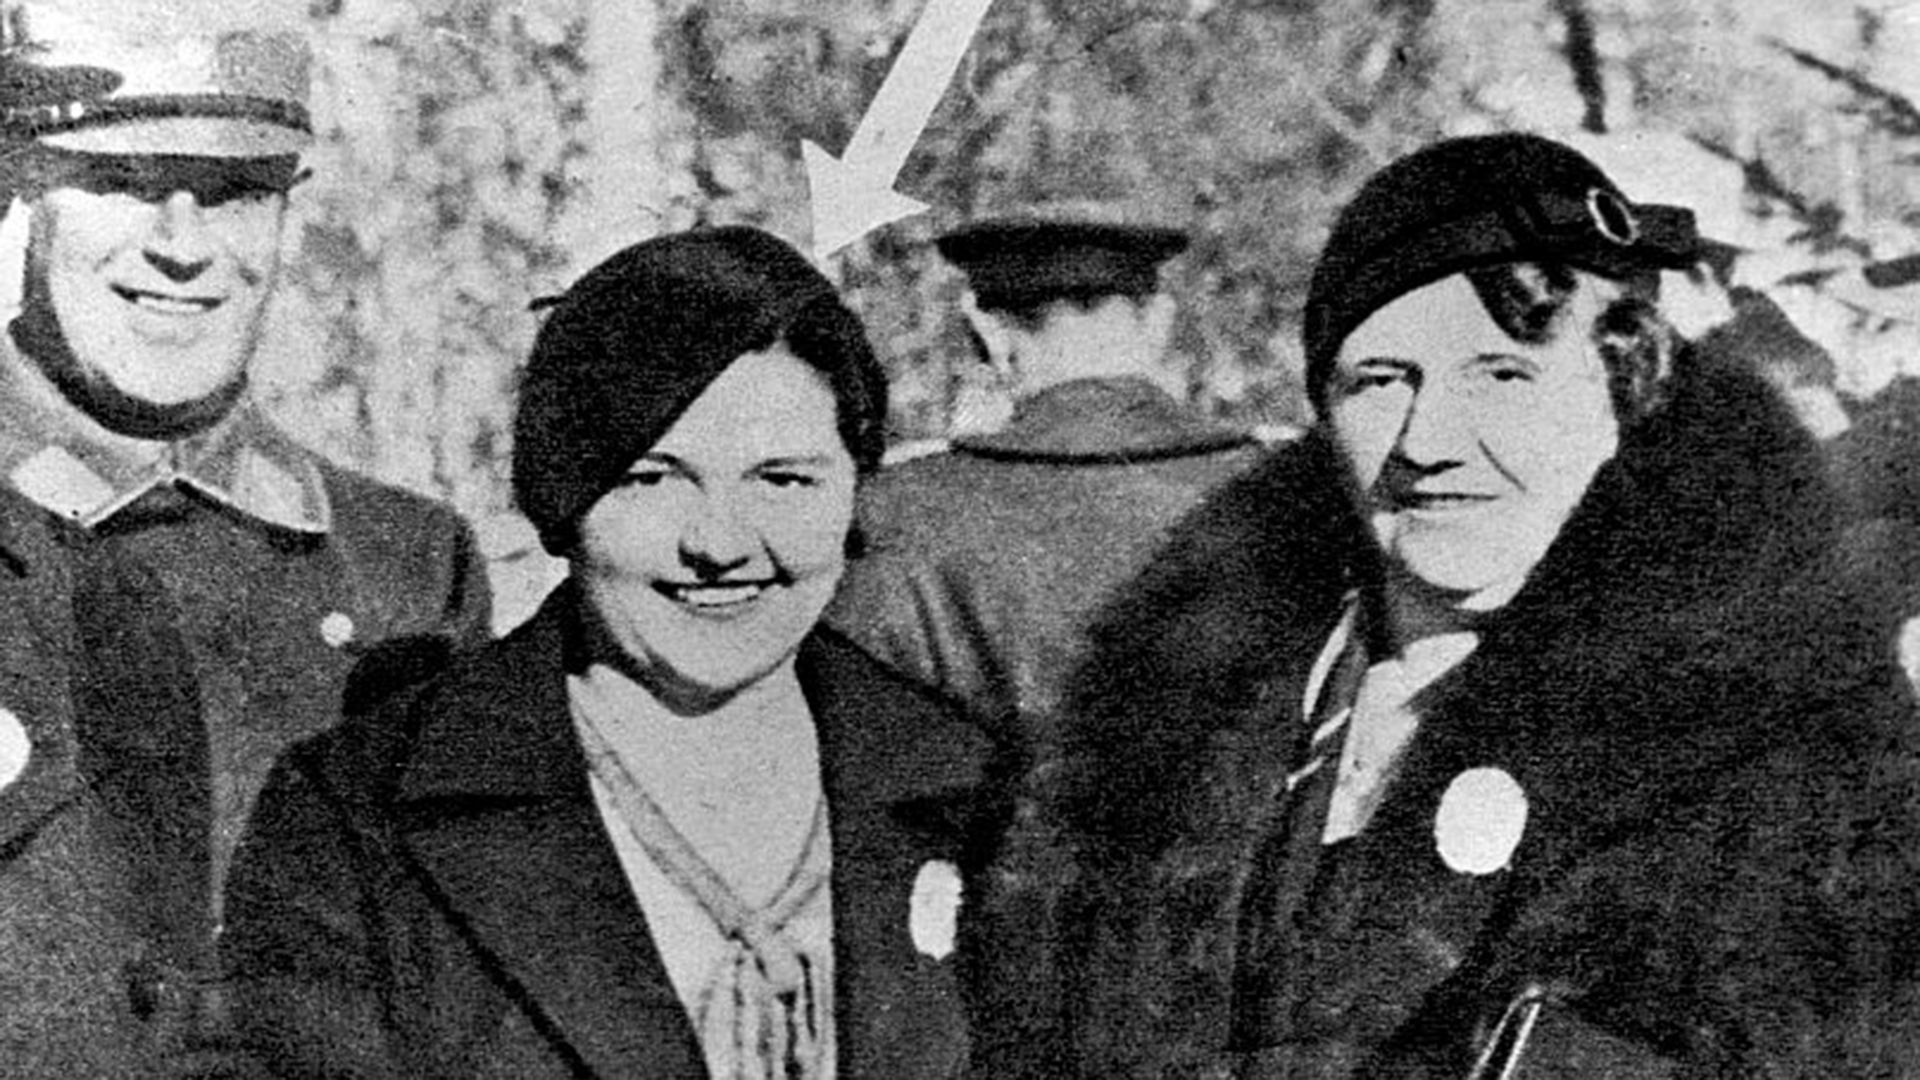 Geli Raubal (señalada por la flecha) y su madre Angela Hitler Raubal. Geli era la sobrina del dictador, quien la convirtió en su amante cuando ella era apenas una adolescente (© Hulton-Deutsch Collection/CORBIS/Corbis via Getty Images)